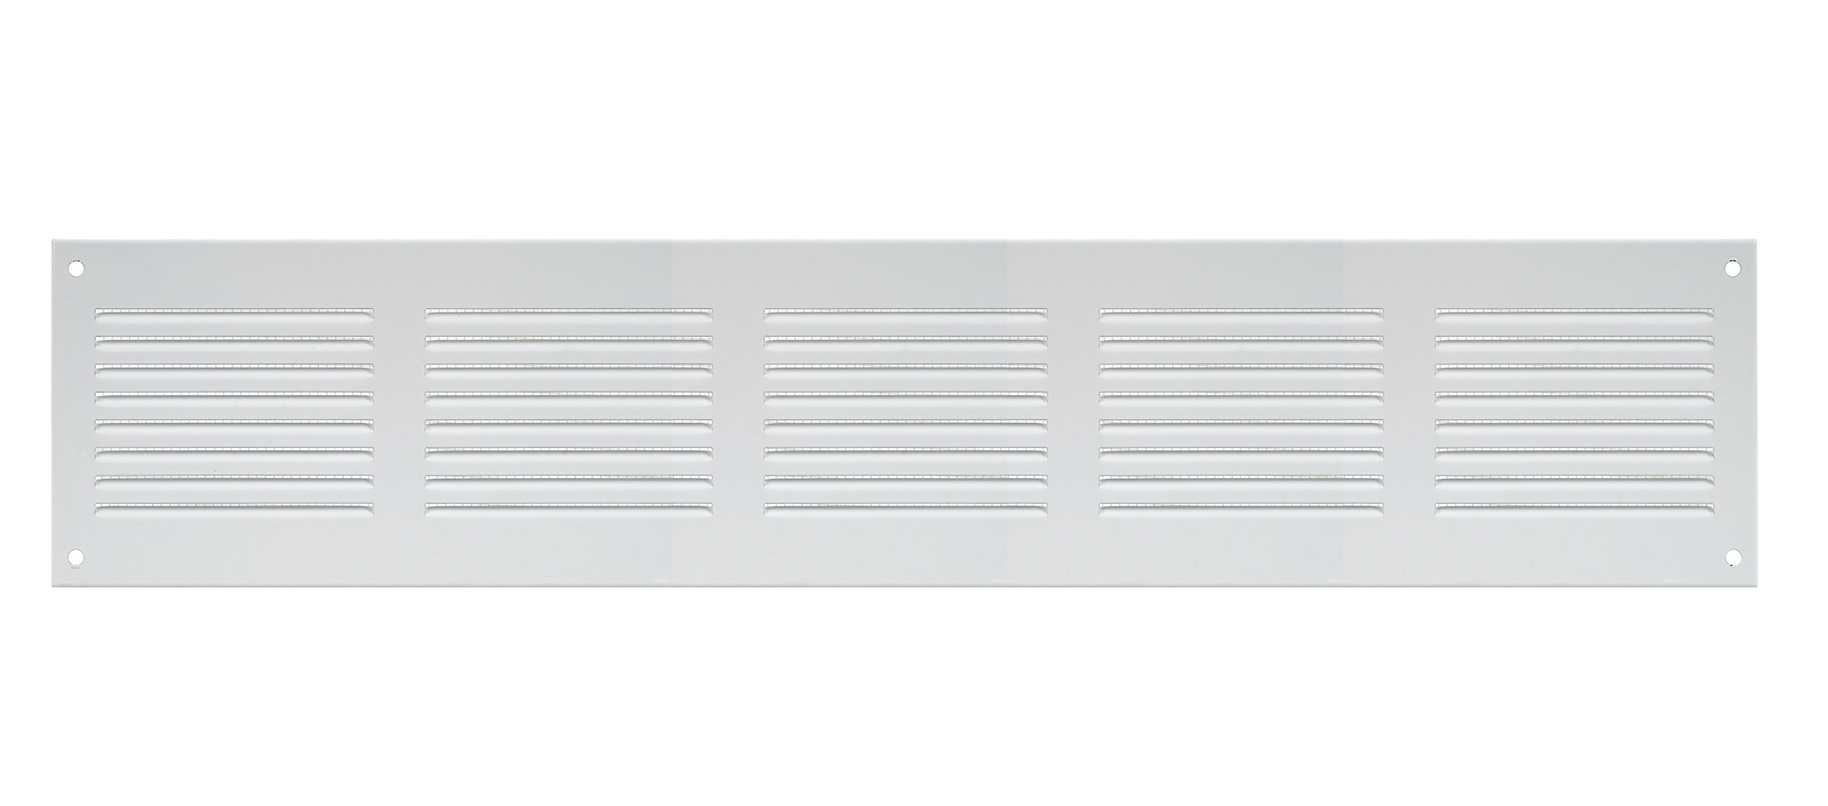 Решетка радиаторная Europlast MR5010 белая алюминиевая решетка nd12 europlast 06 0641 006